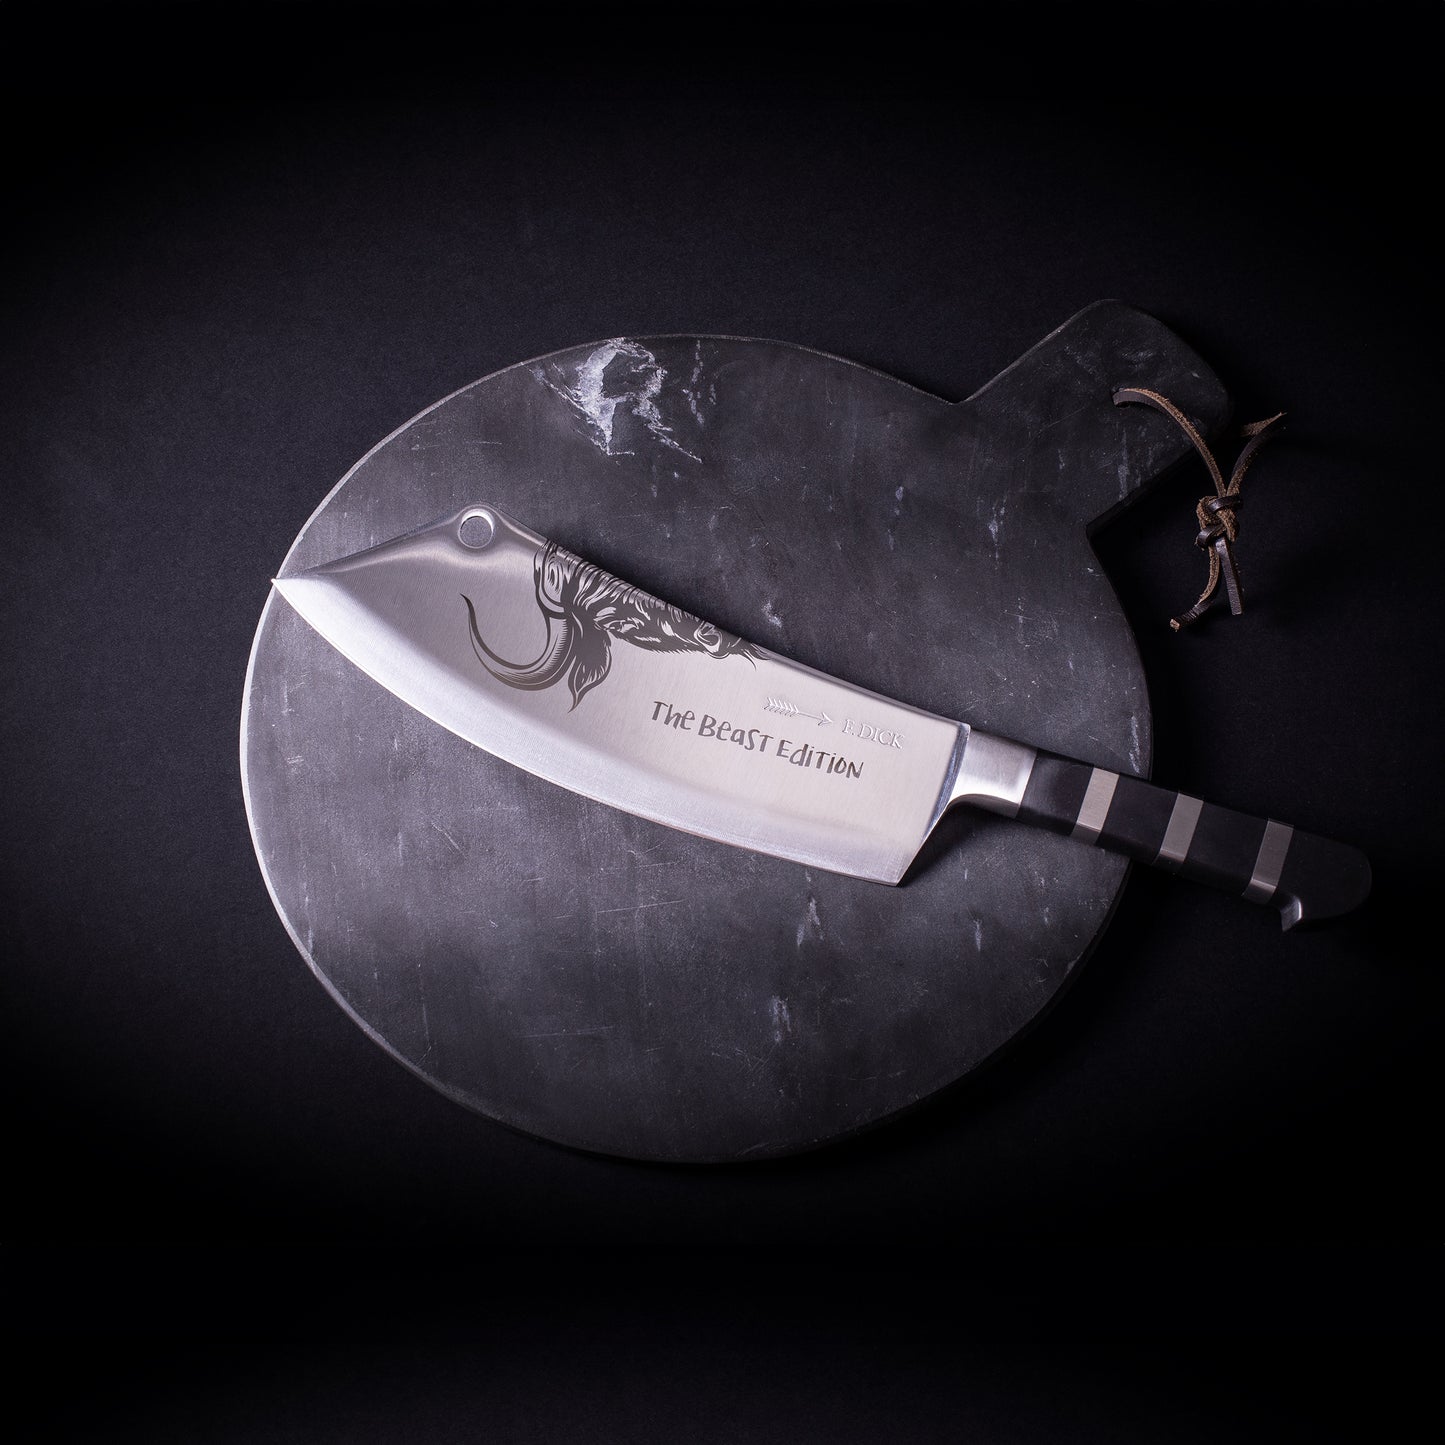 Couteau de chef Ajax - Edition Limitée "The Beast"